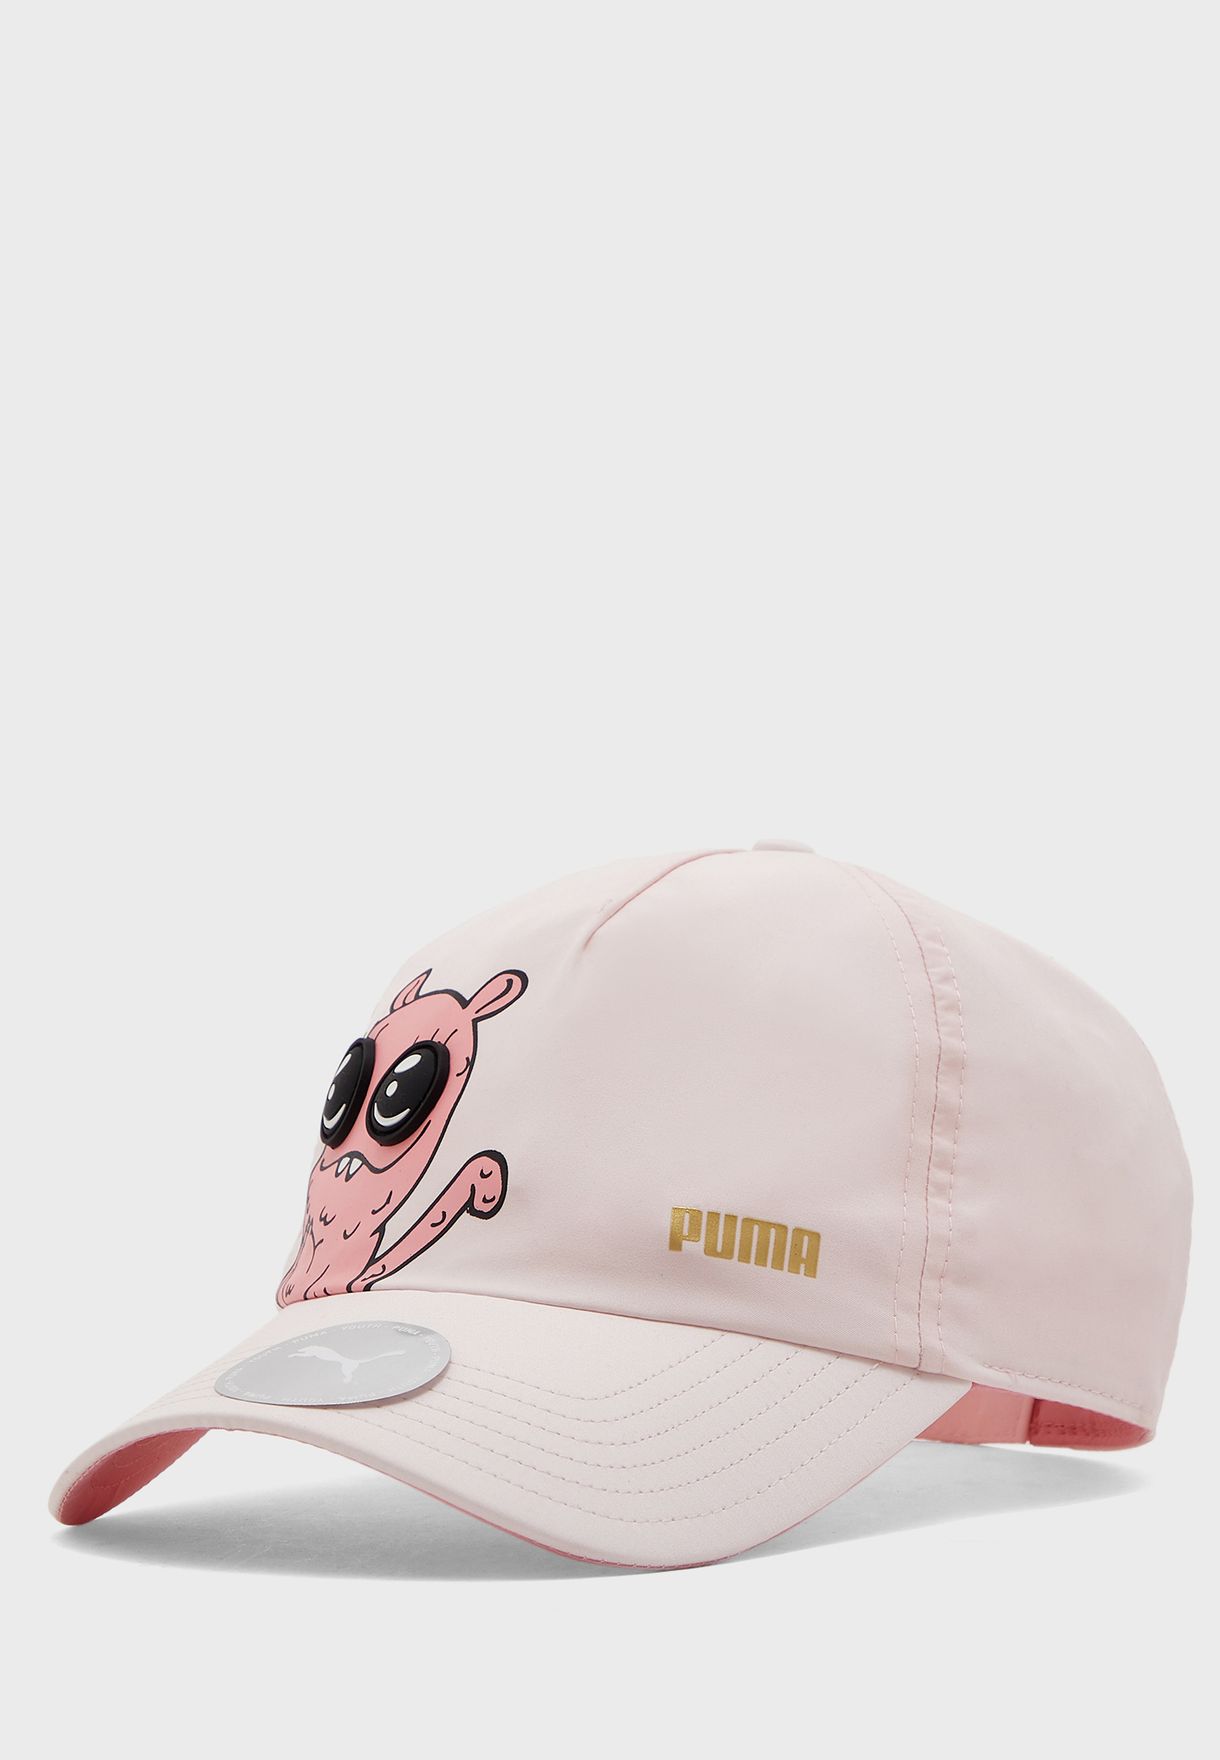 puma baseball hat